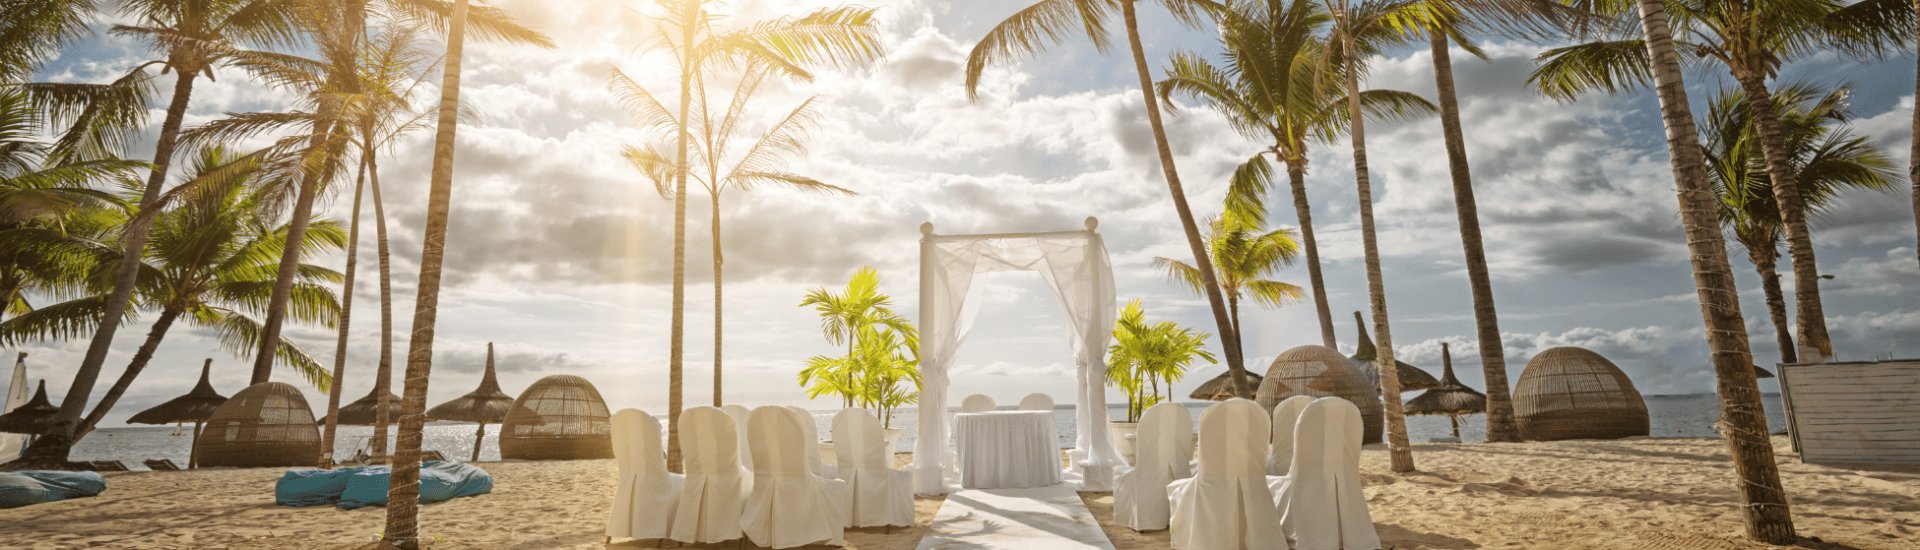 Mauritius Wedding Venue